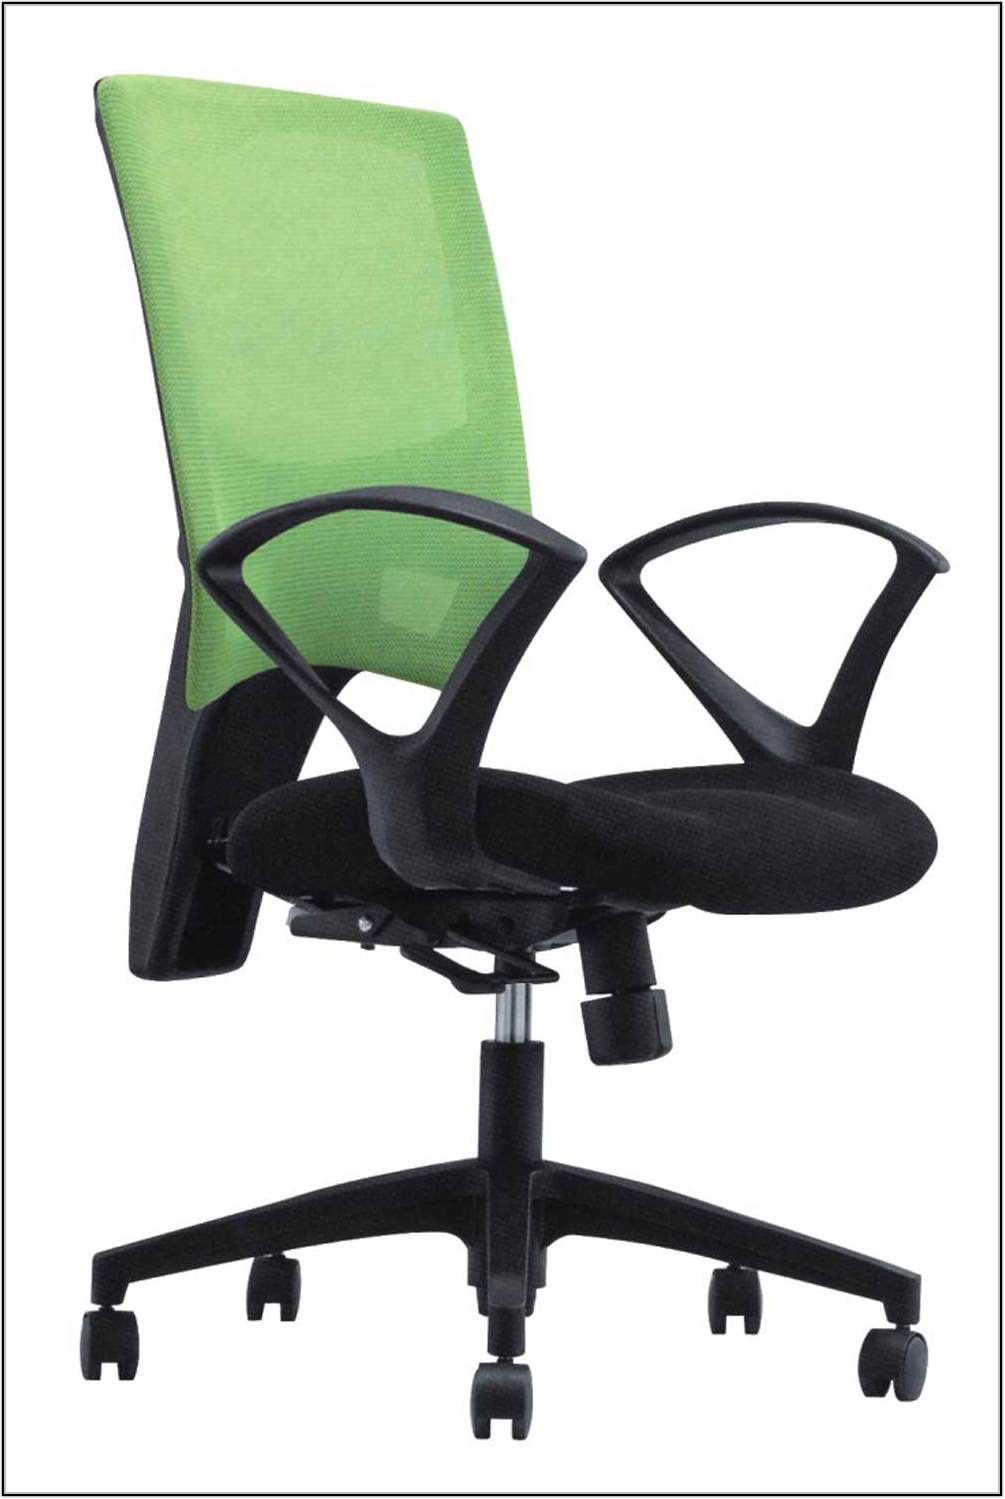 Ikea Office Chair Hack